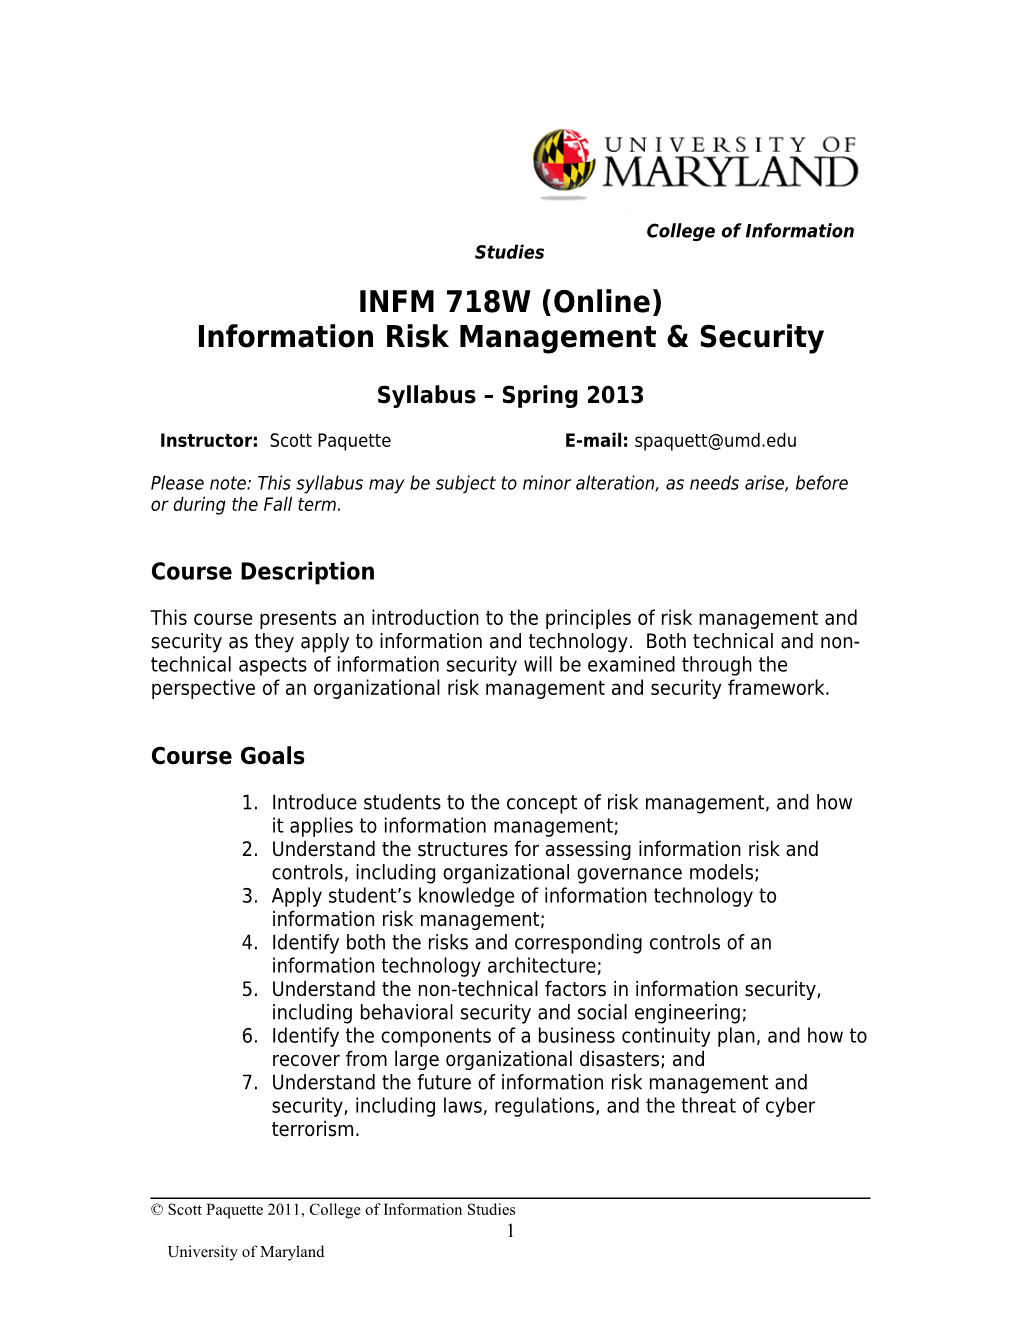 Information Risk Management & Security